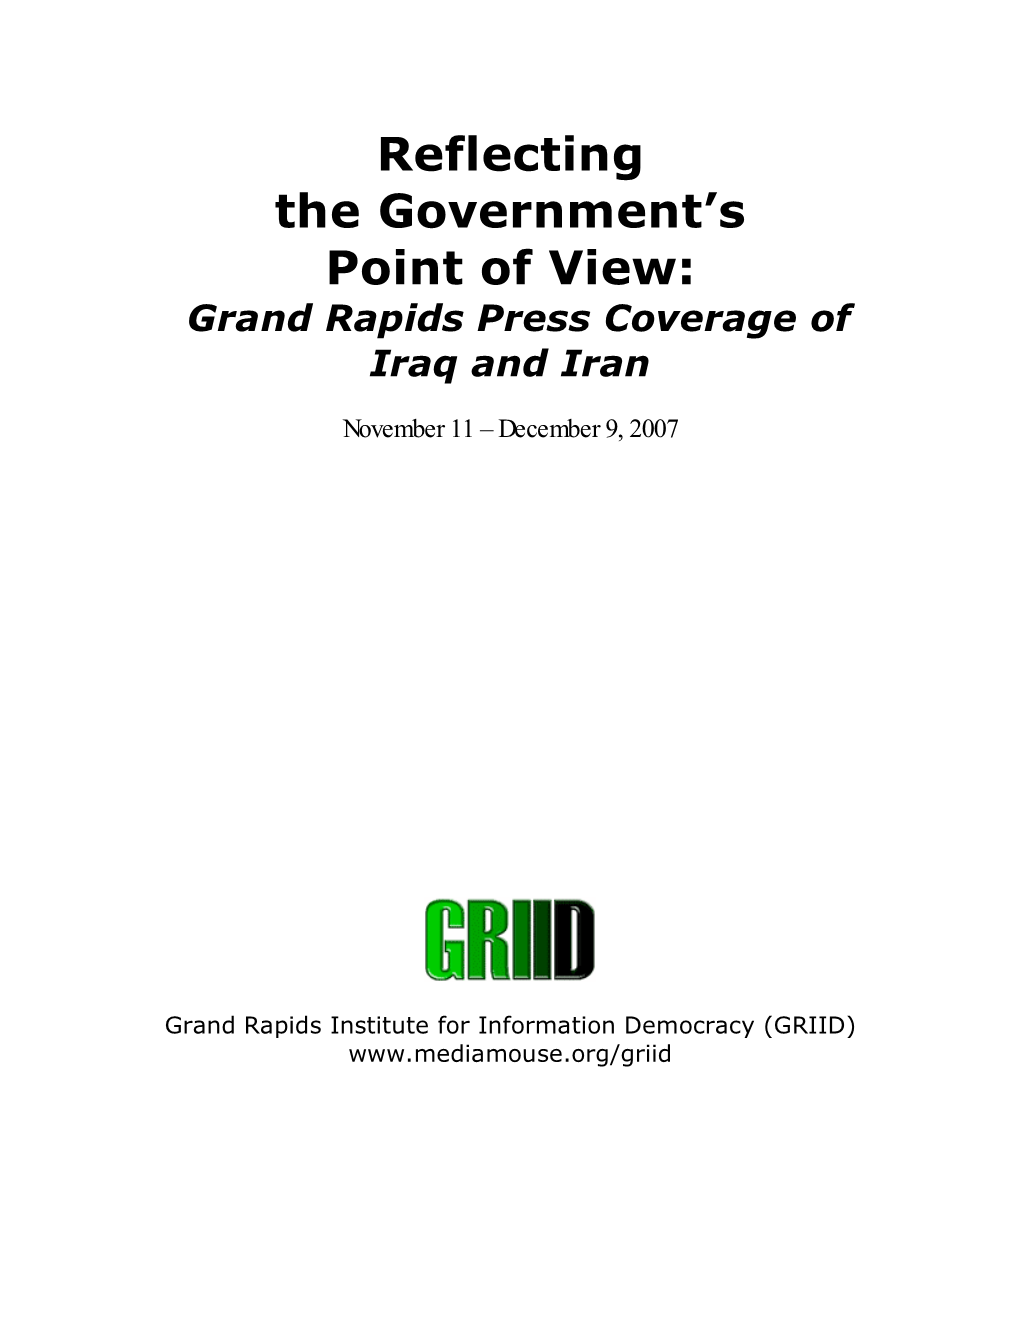 Grand Rapids Press Coverage of Iraq and Iran